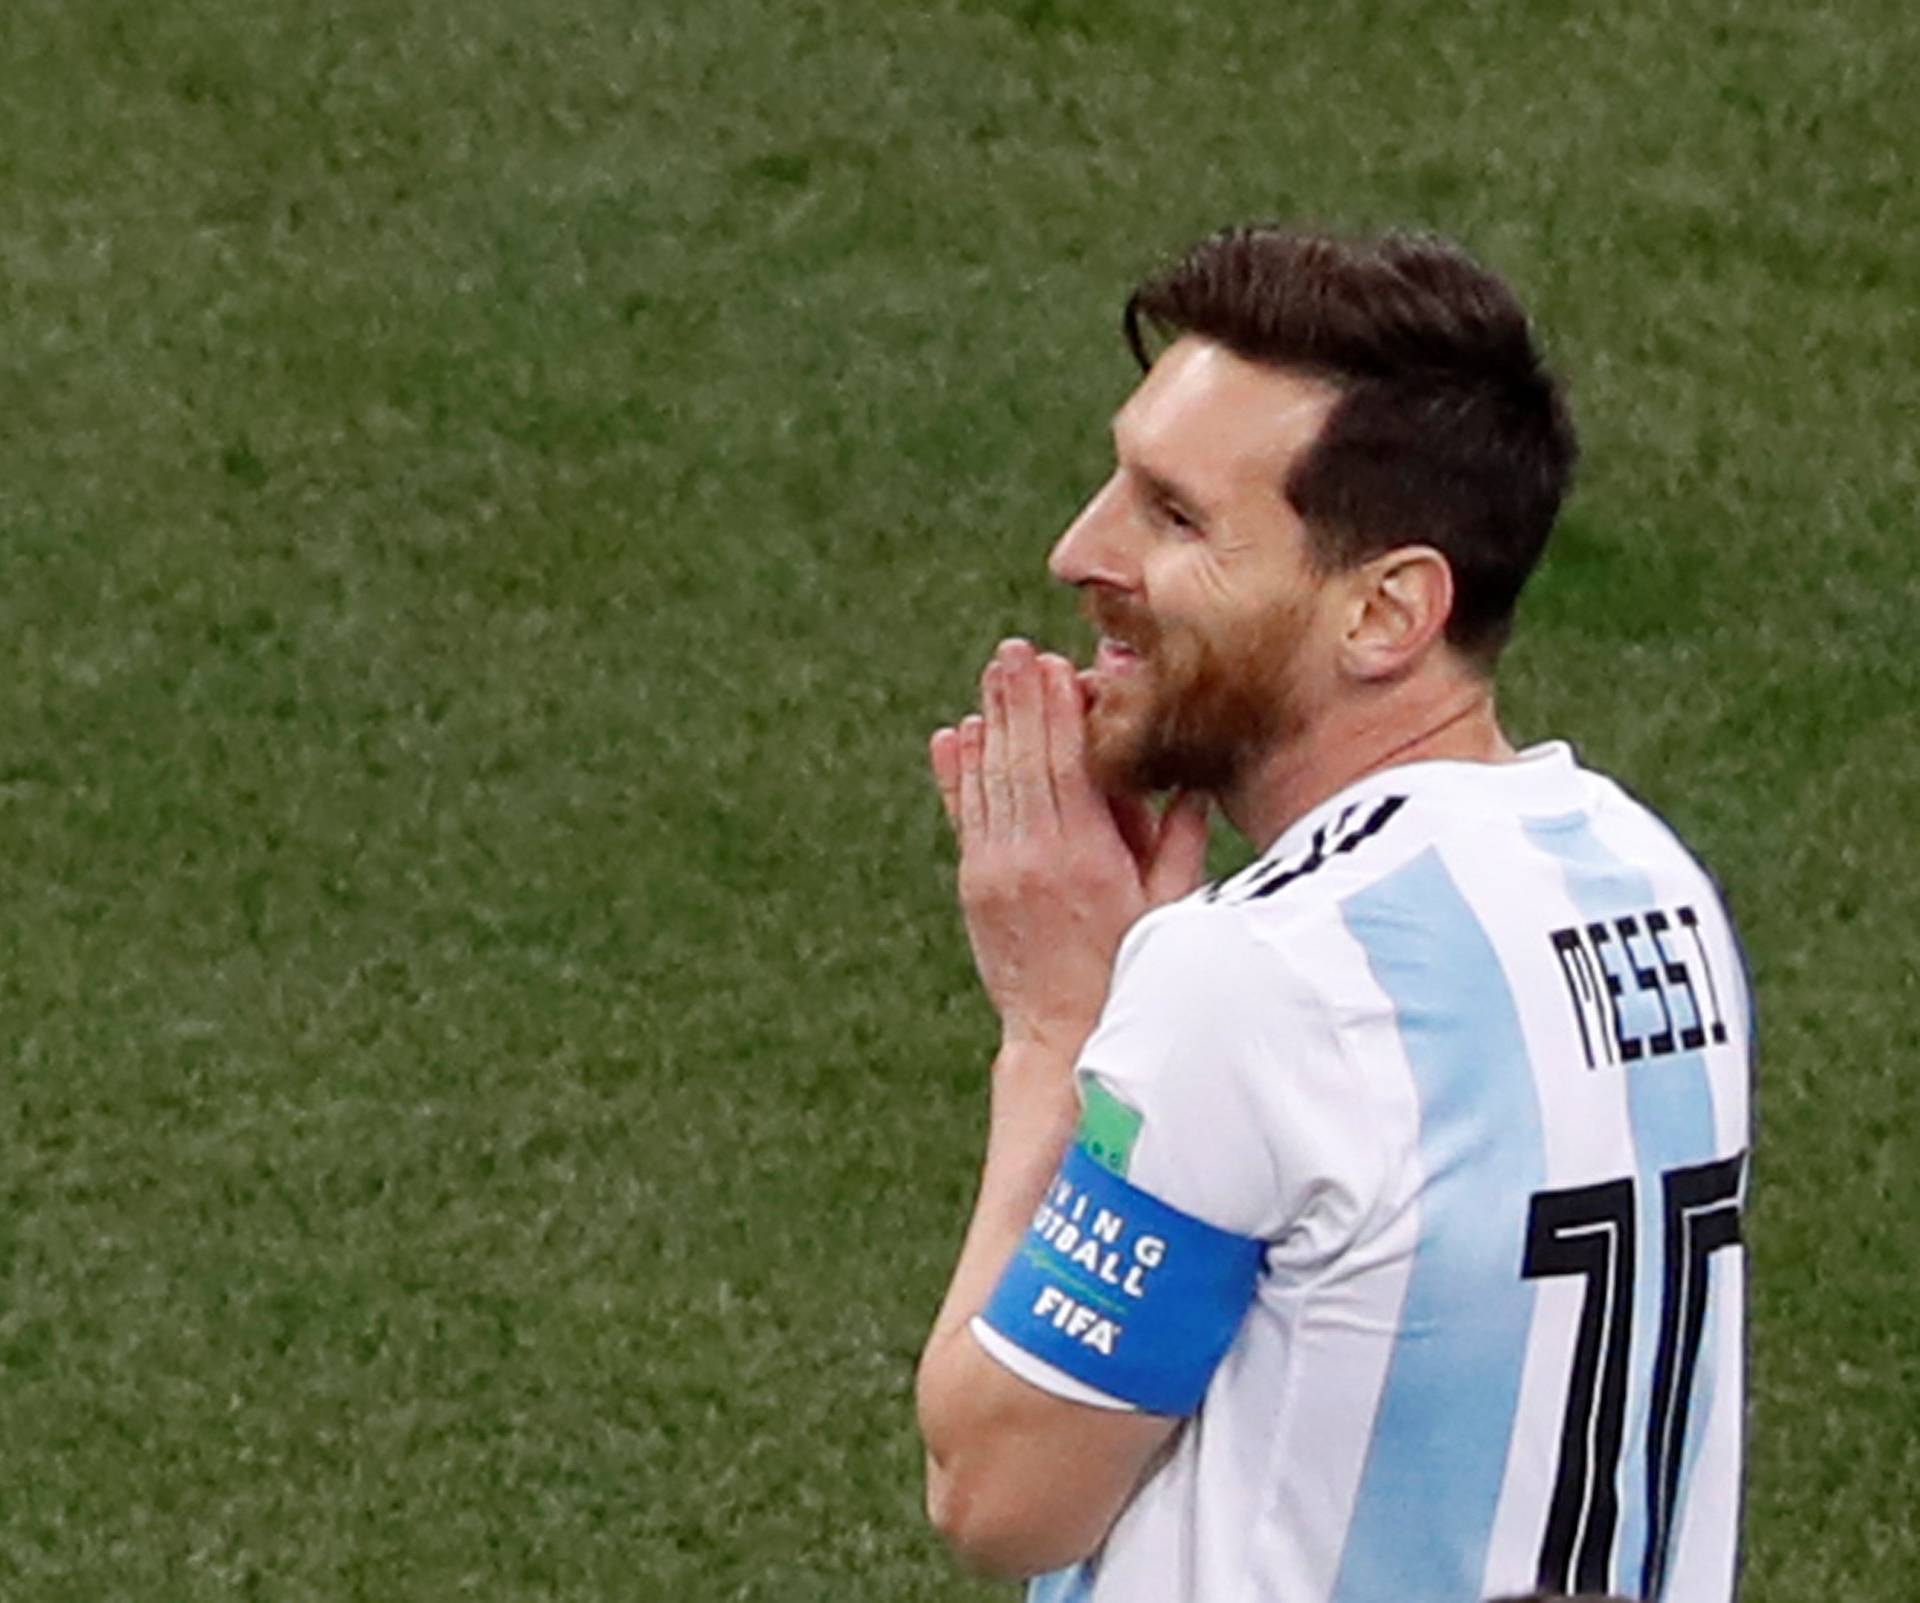 World Cup - Group D - Argentina vs Croatia